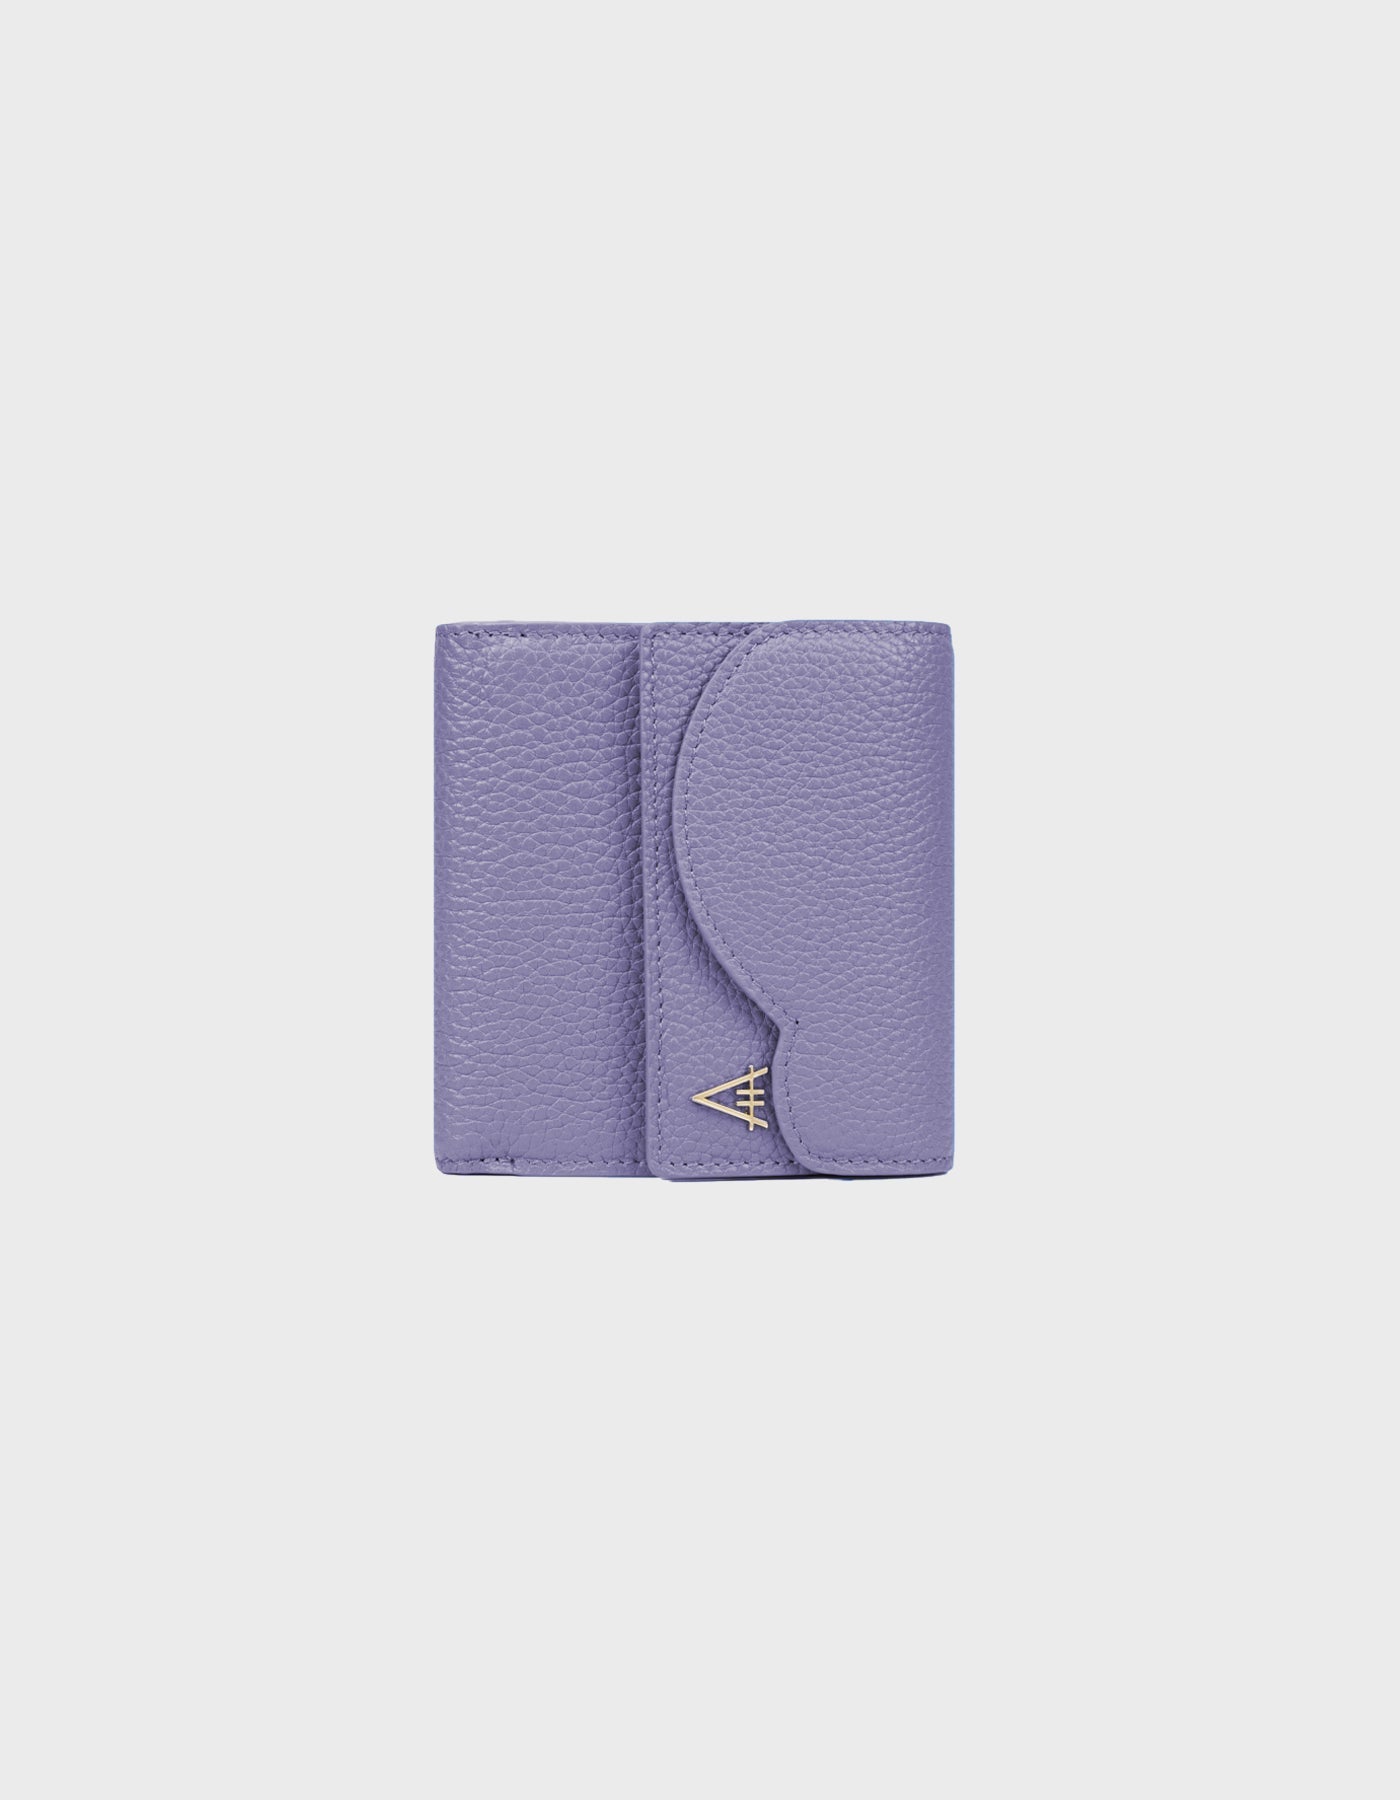 HiVa Atelier - Larus Compact Wallet Lavender